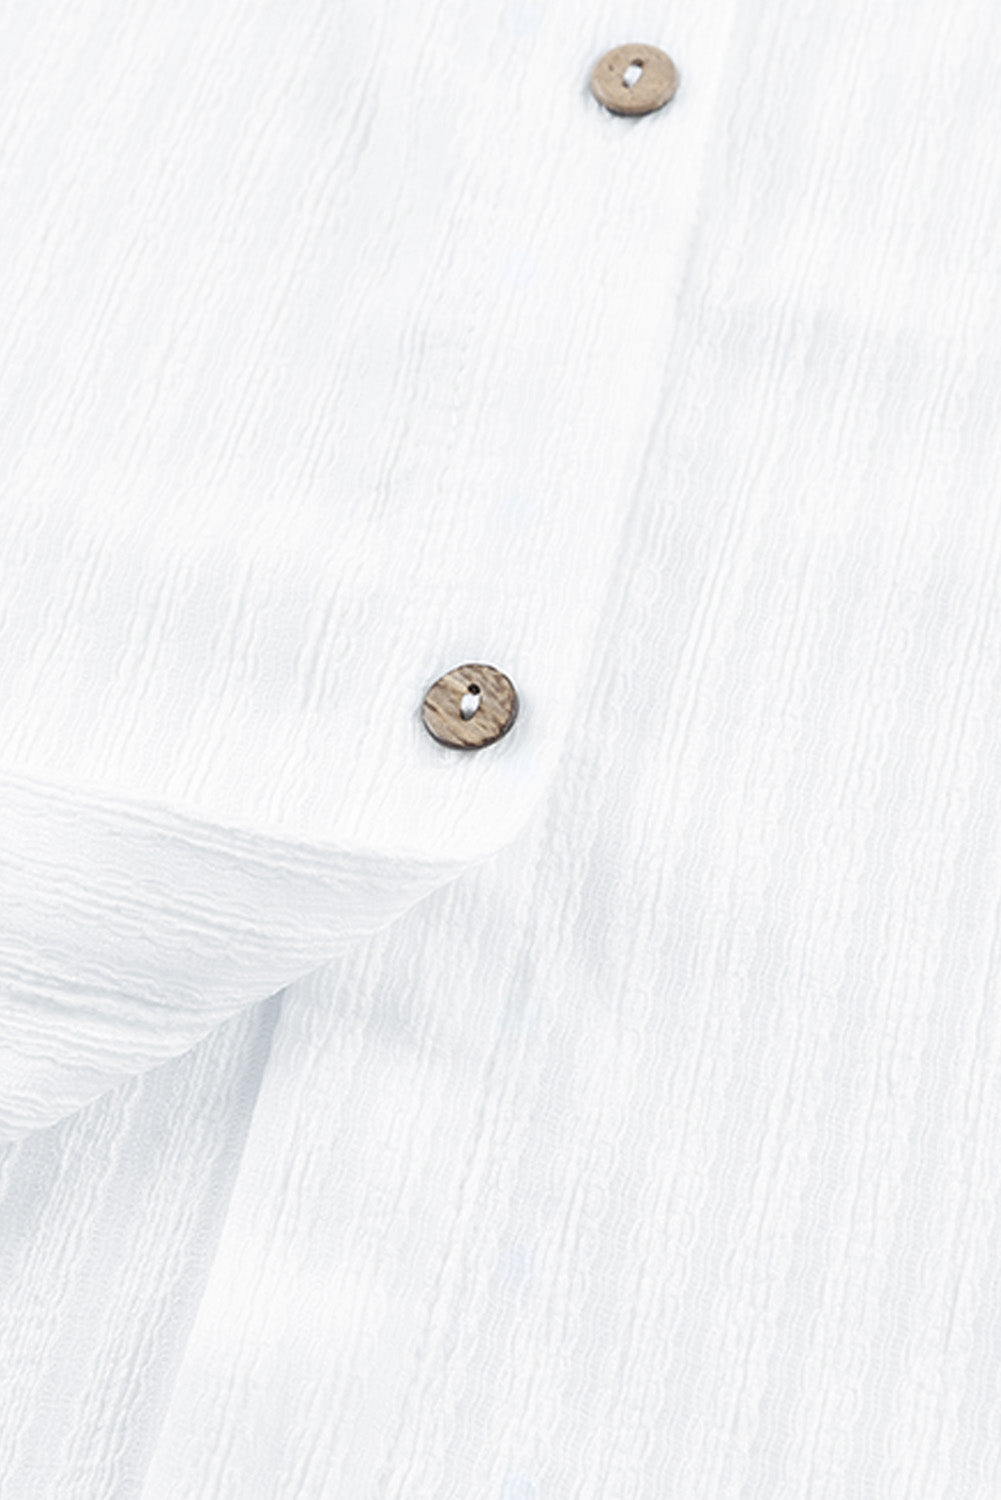 Robe chemise blanche à rayures et boutons froissés sur le devant